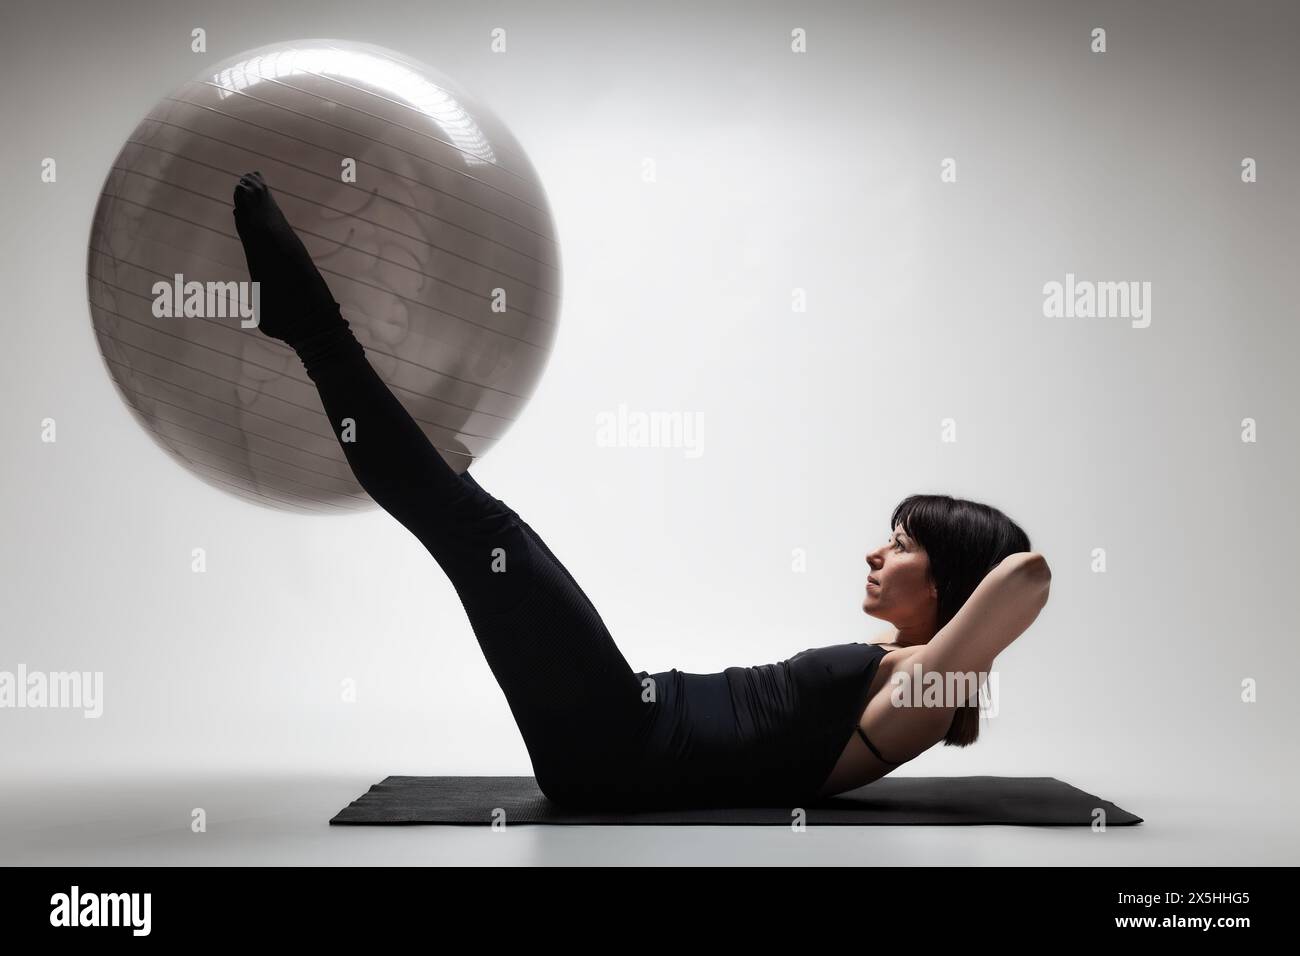 Eine fokussierte junge Frau nimmt an einer Pilates-Sitzung Teil, indem sie einen großen Fitnessball auf einer Yoga-Matte in einer sanft beleuchteten Studioumgebung verwendet. Stockfoto